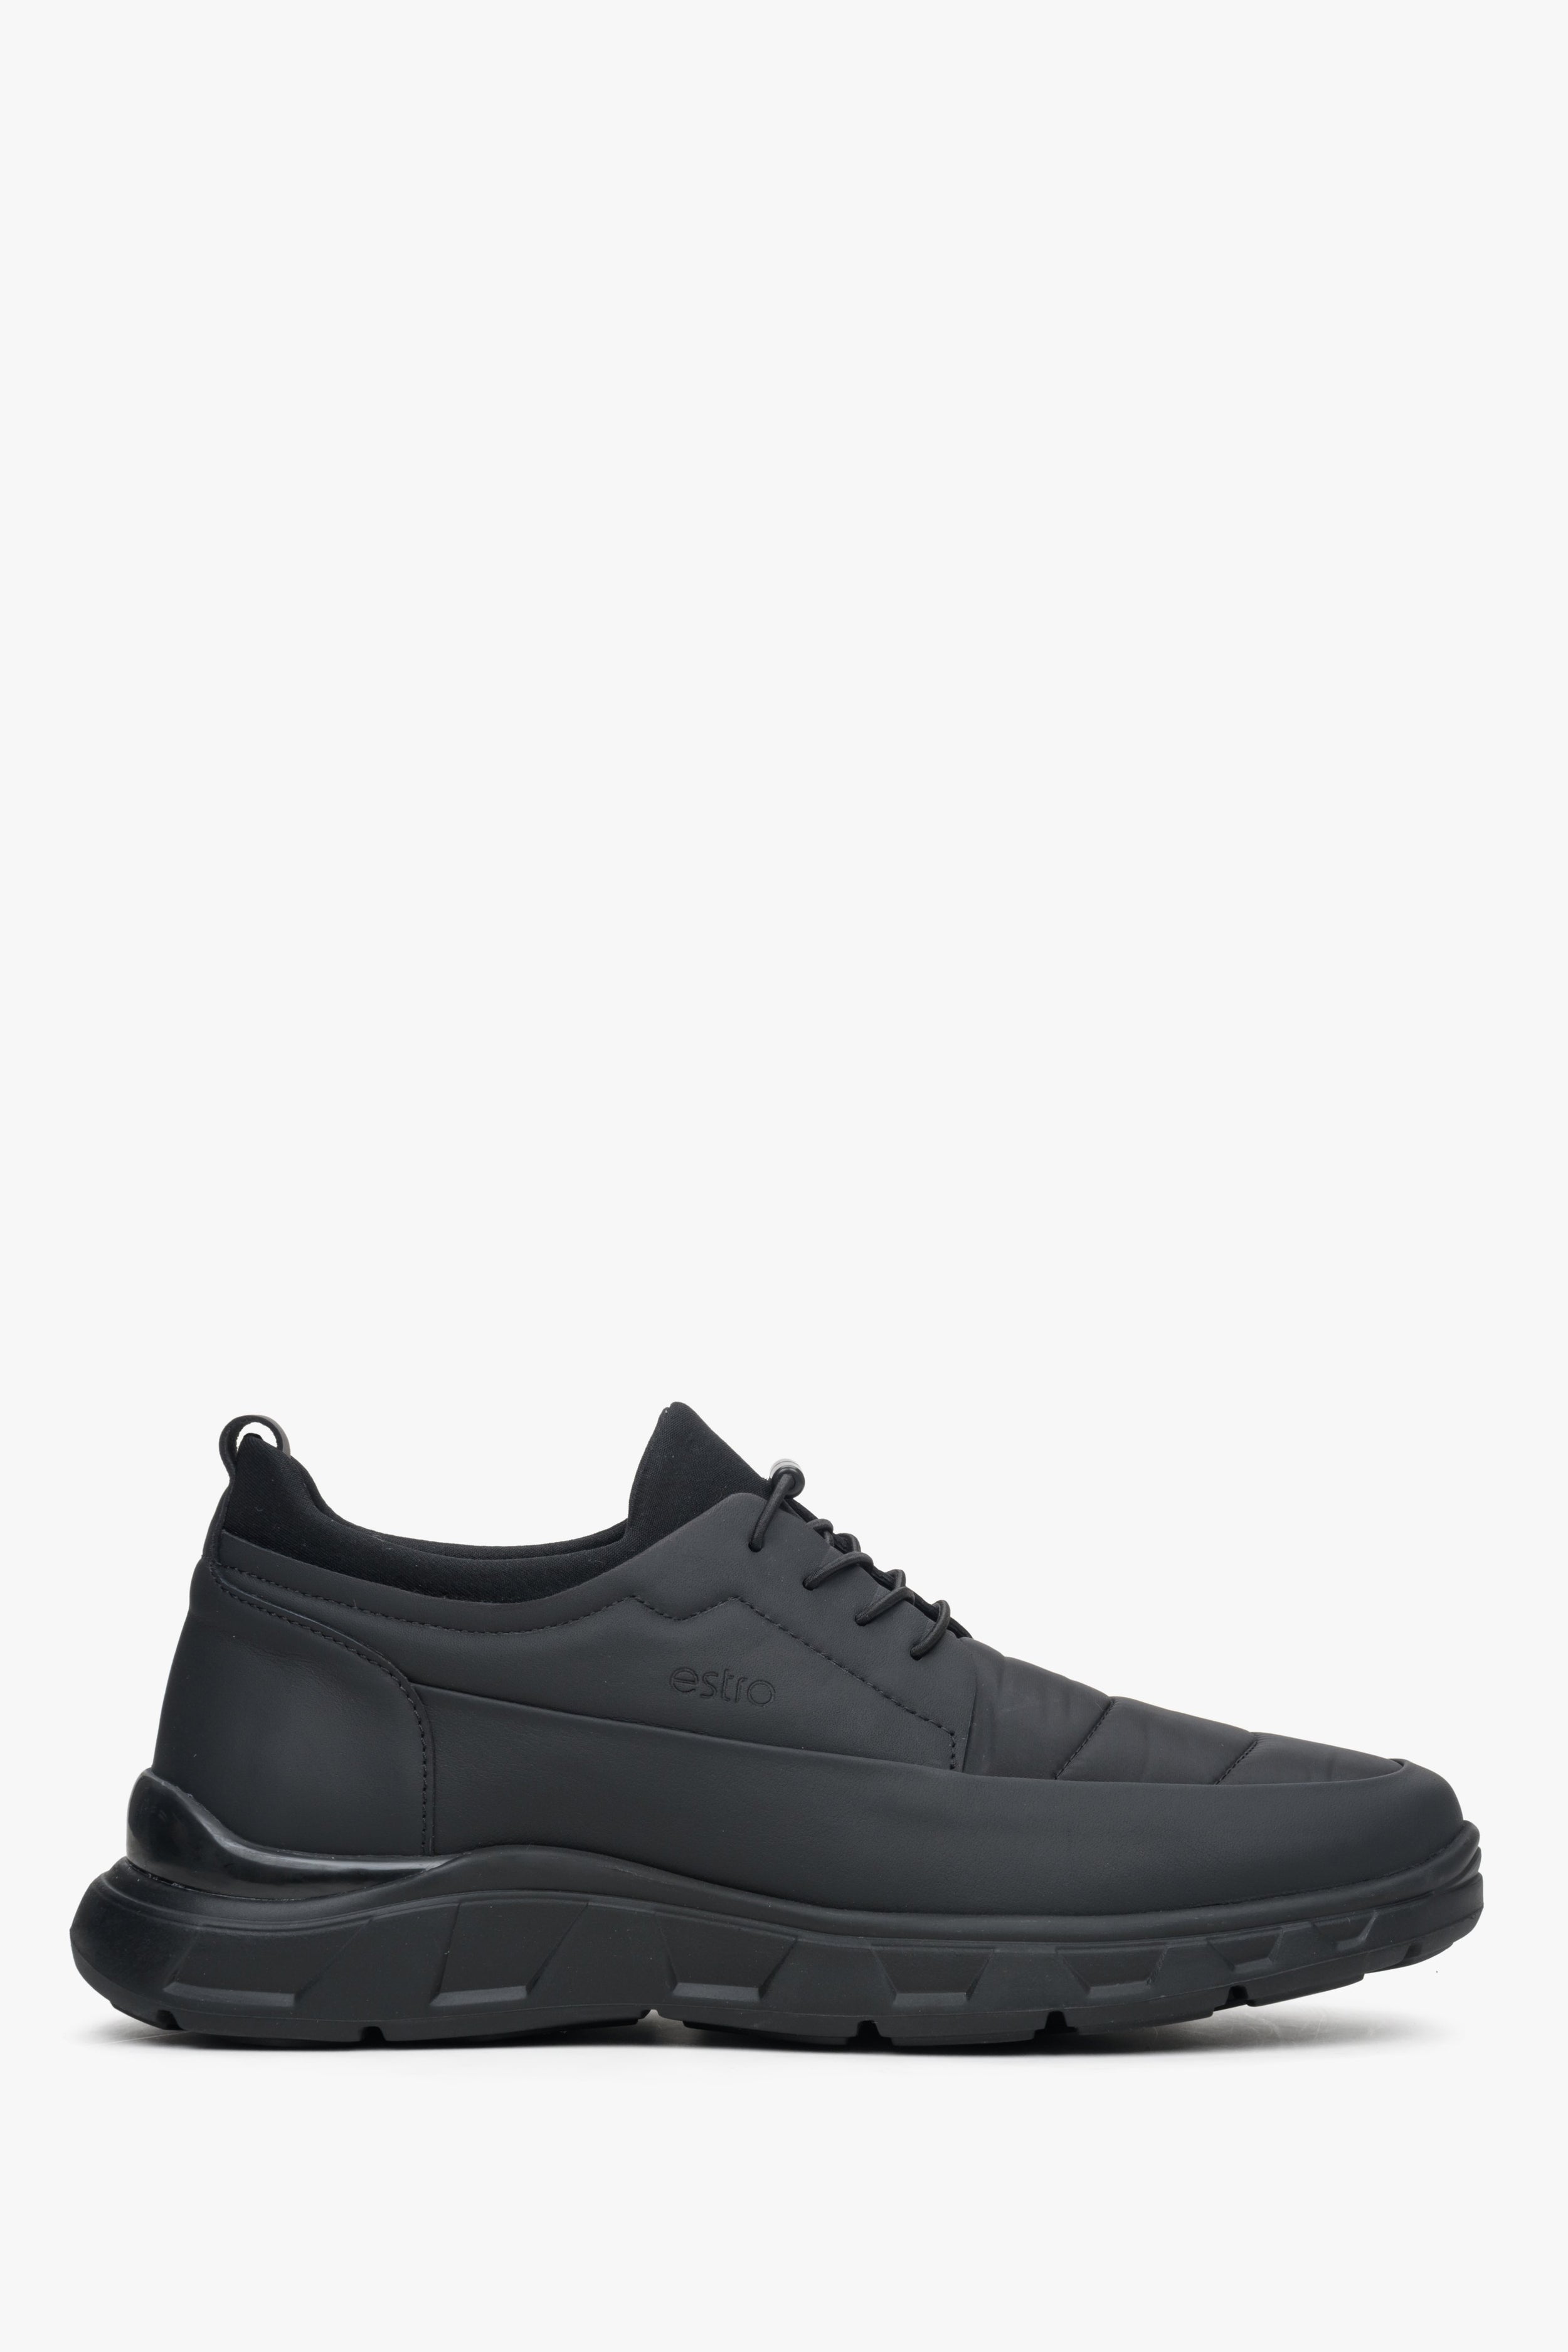 Estro: Miękkie sneakersy męskie w kolorze czarnym ze ściągaczem